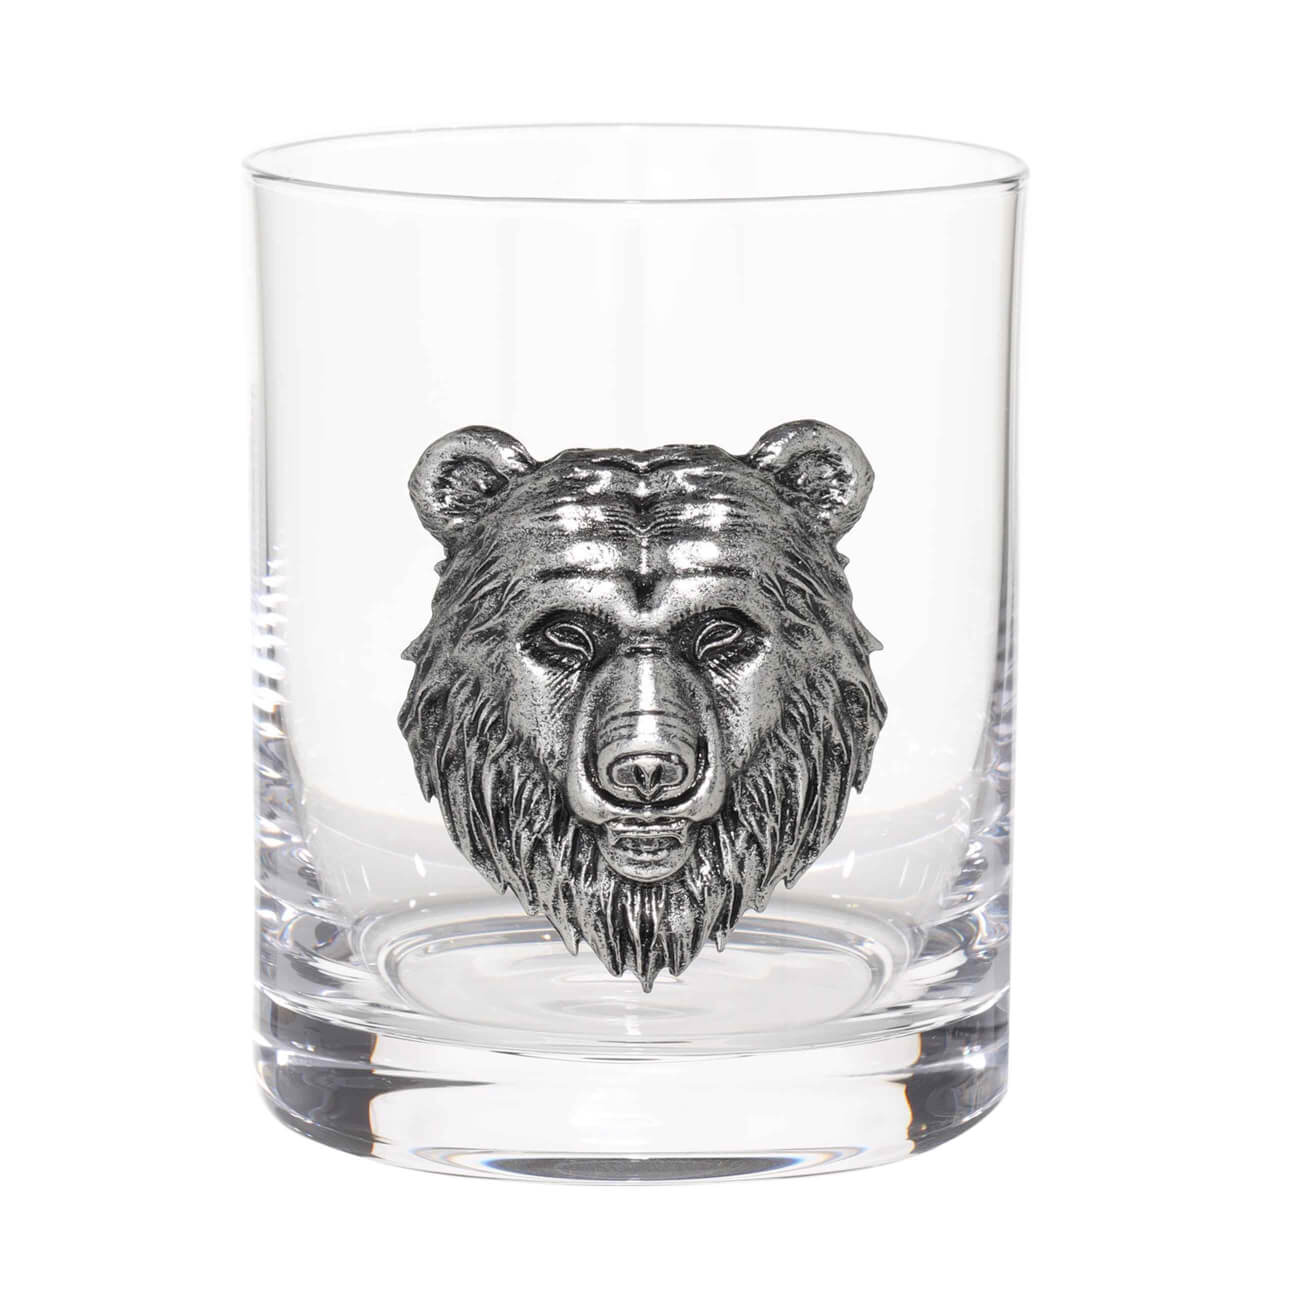 Стакан для виски, 10 см, 340 мл, стекло/металл, серебристый, Медведь, Lux elements лиса и медведь русская сказка даль в